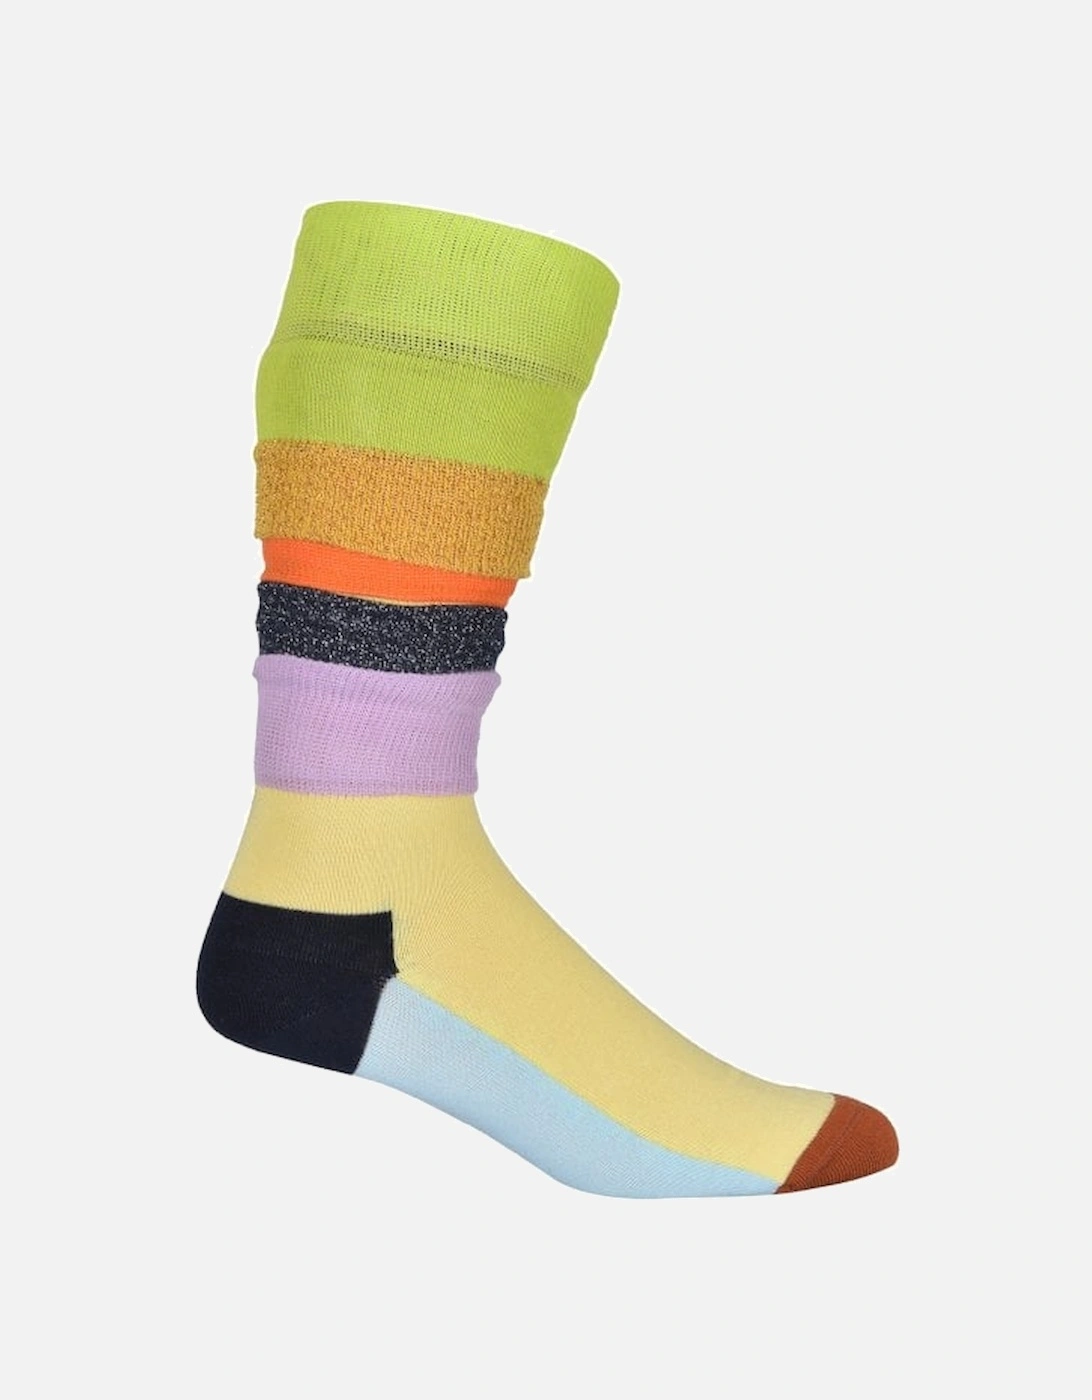 Funky Times Multi-Textured Socks, Multi